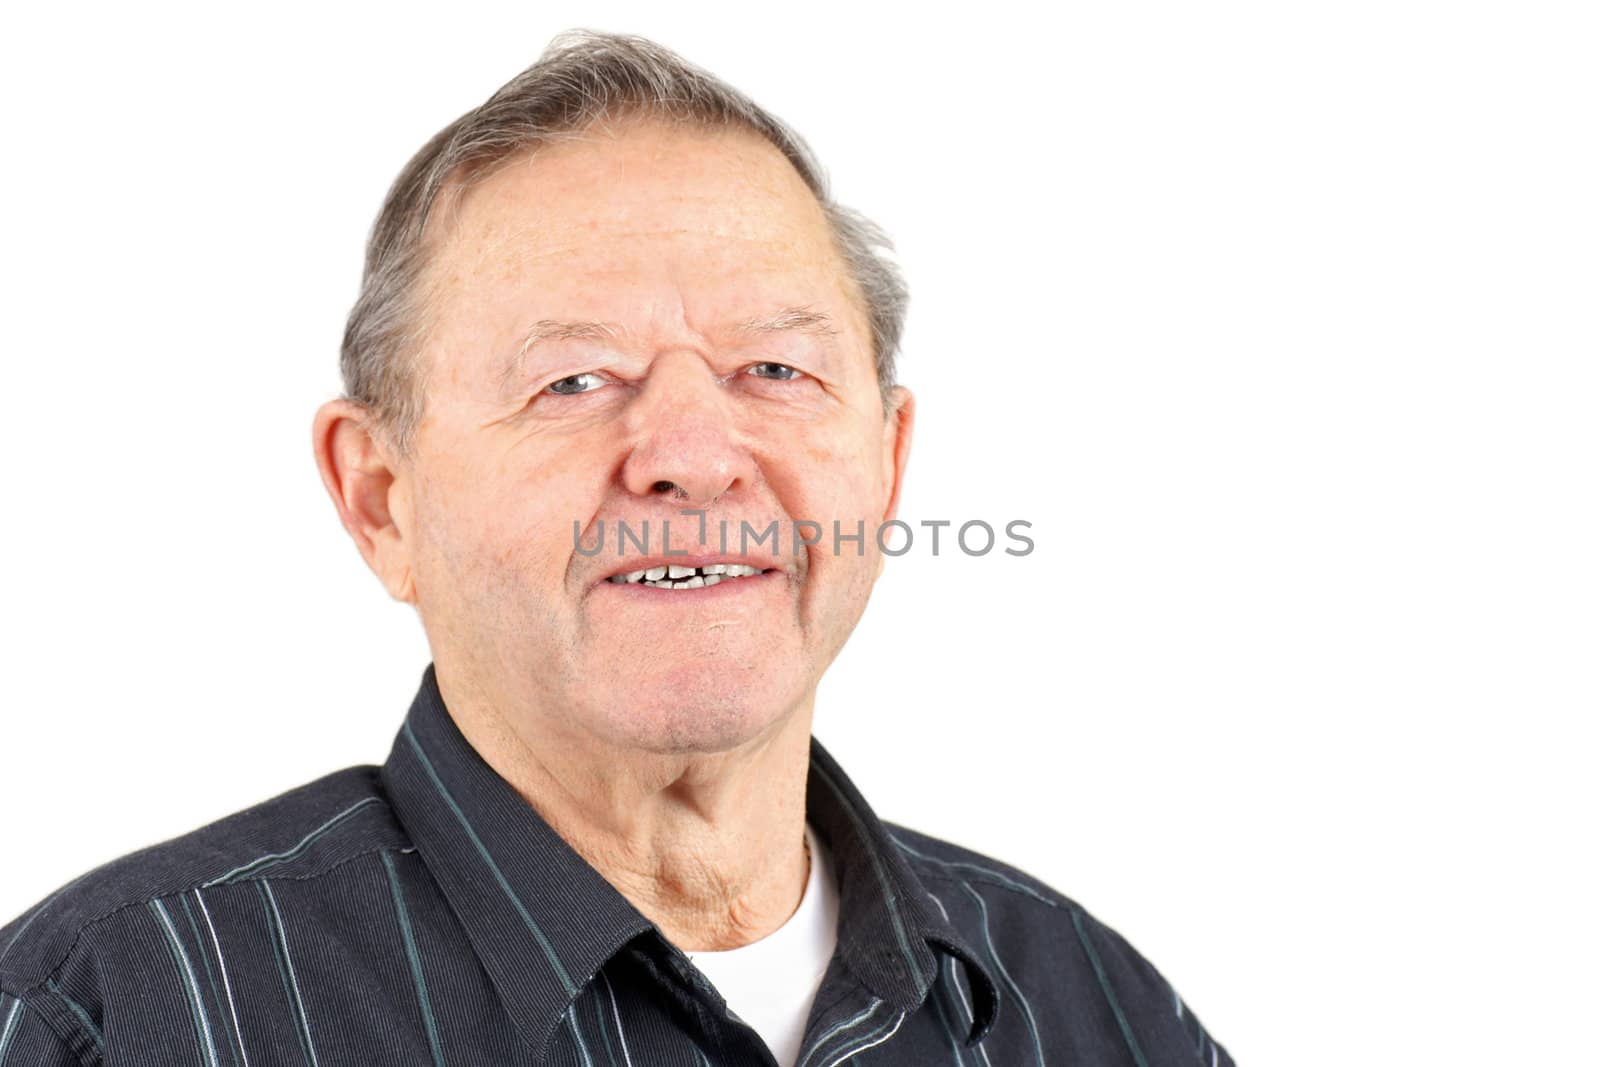 Smiling senior man by Mirage3